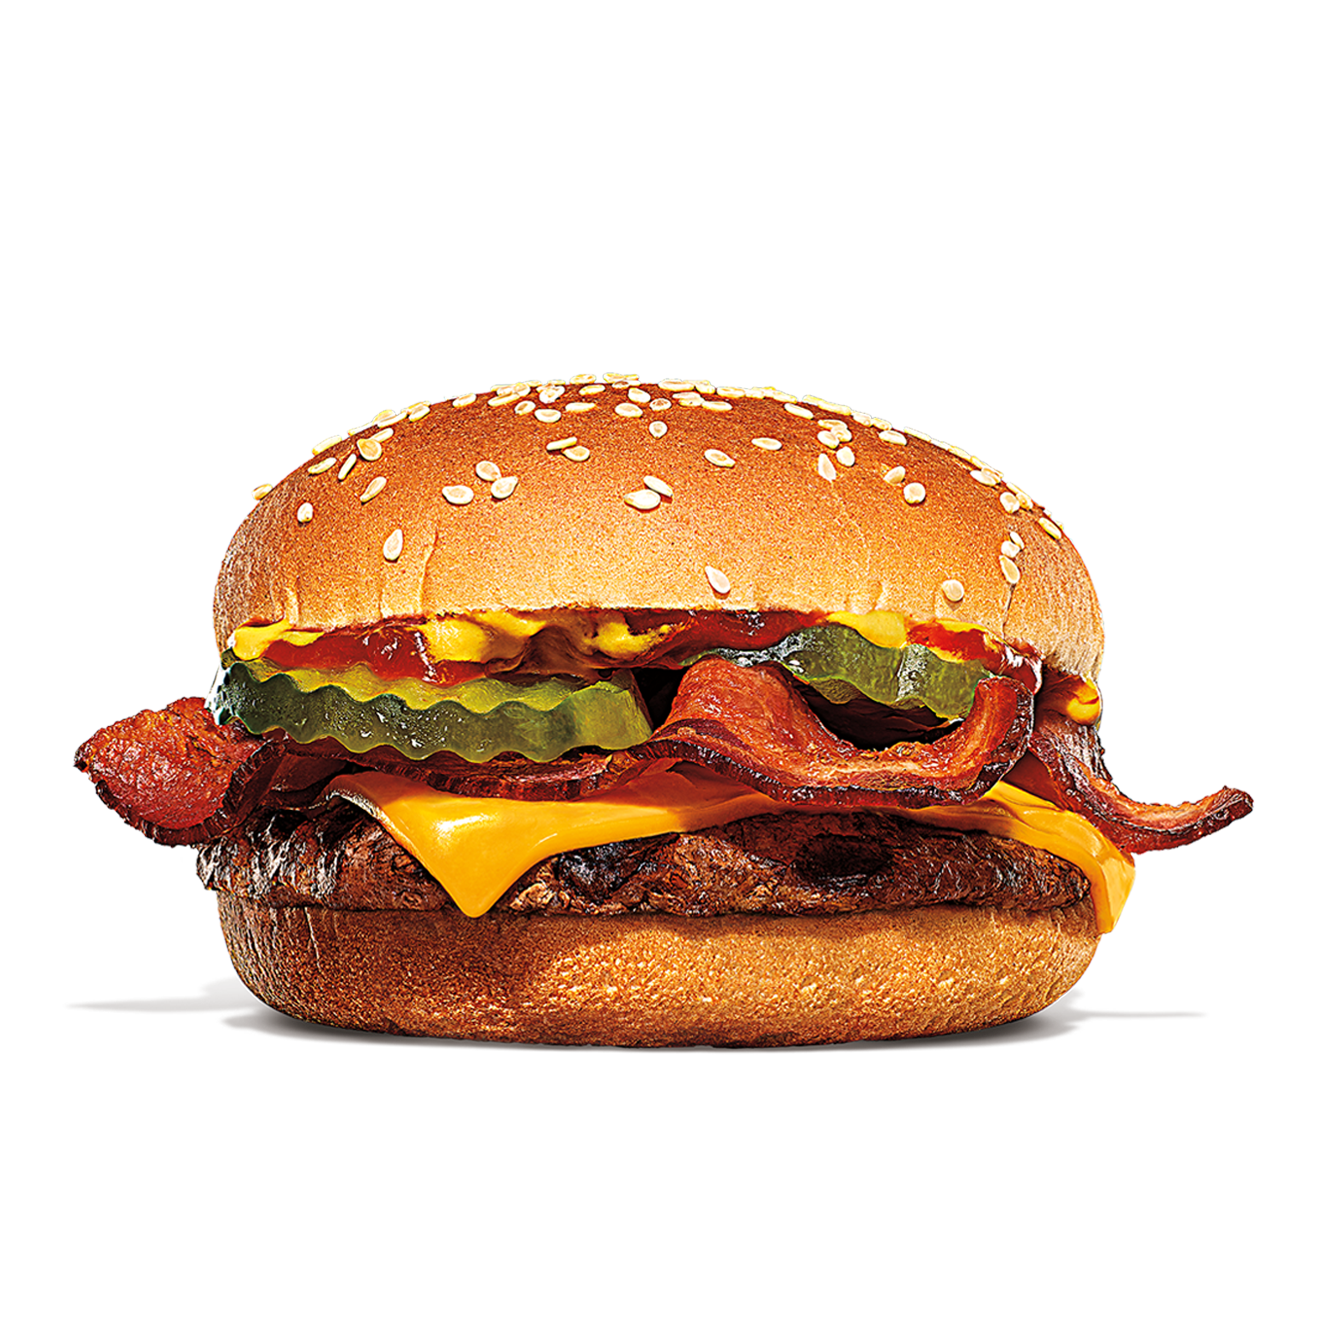 Burger King Arcadia (863)494-6671